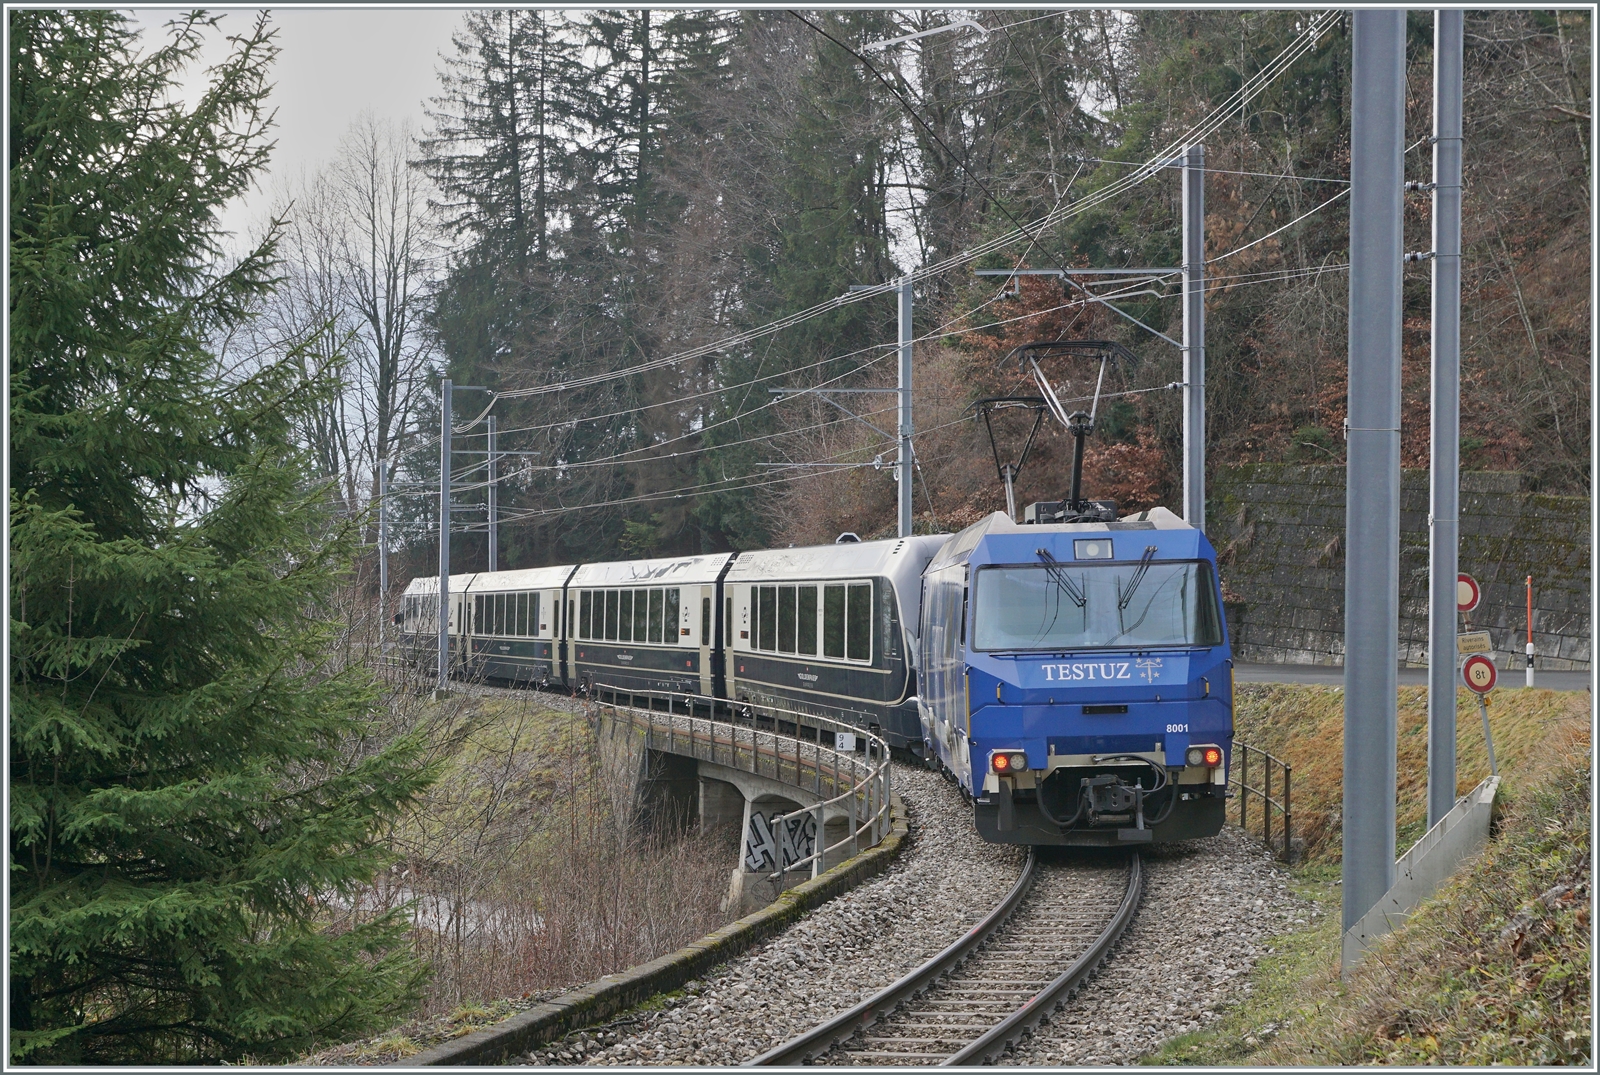 Die MOG Ge 4/4 8001 ist mit ihrem Spurwechselwagenzug GPX auf dem Weg nach Montreux. Der Zug verliess Normalspurig Interlaken Ost, wurde in Zweisimmen umgespurt und ist nun kurz nach Les Avants schon fast am Ziel seiner Fahr.

4. Jan. 2023